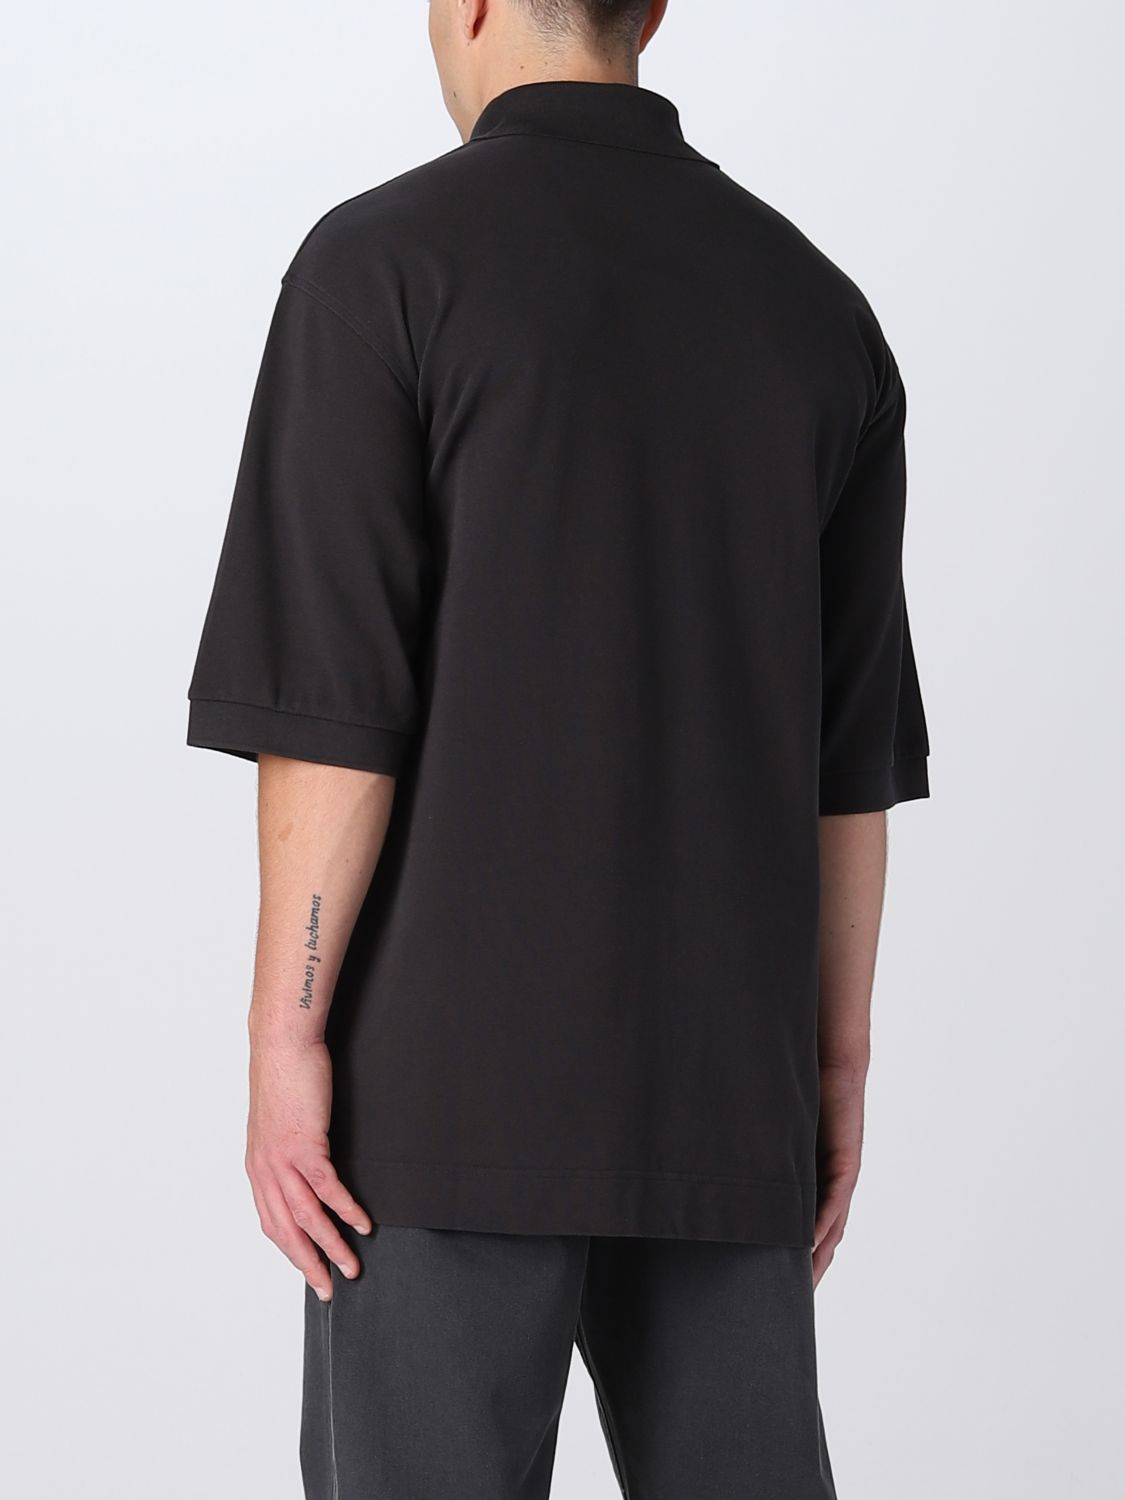 ACNE STUDIOS: polo shirt for man - Grey | Acne Studios polo shirt ...